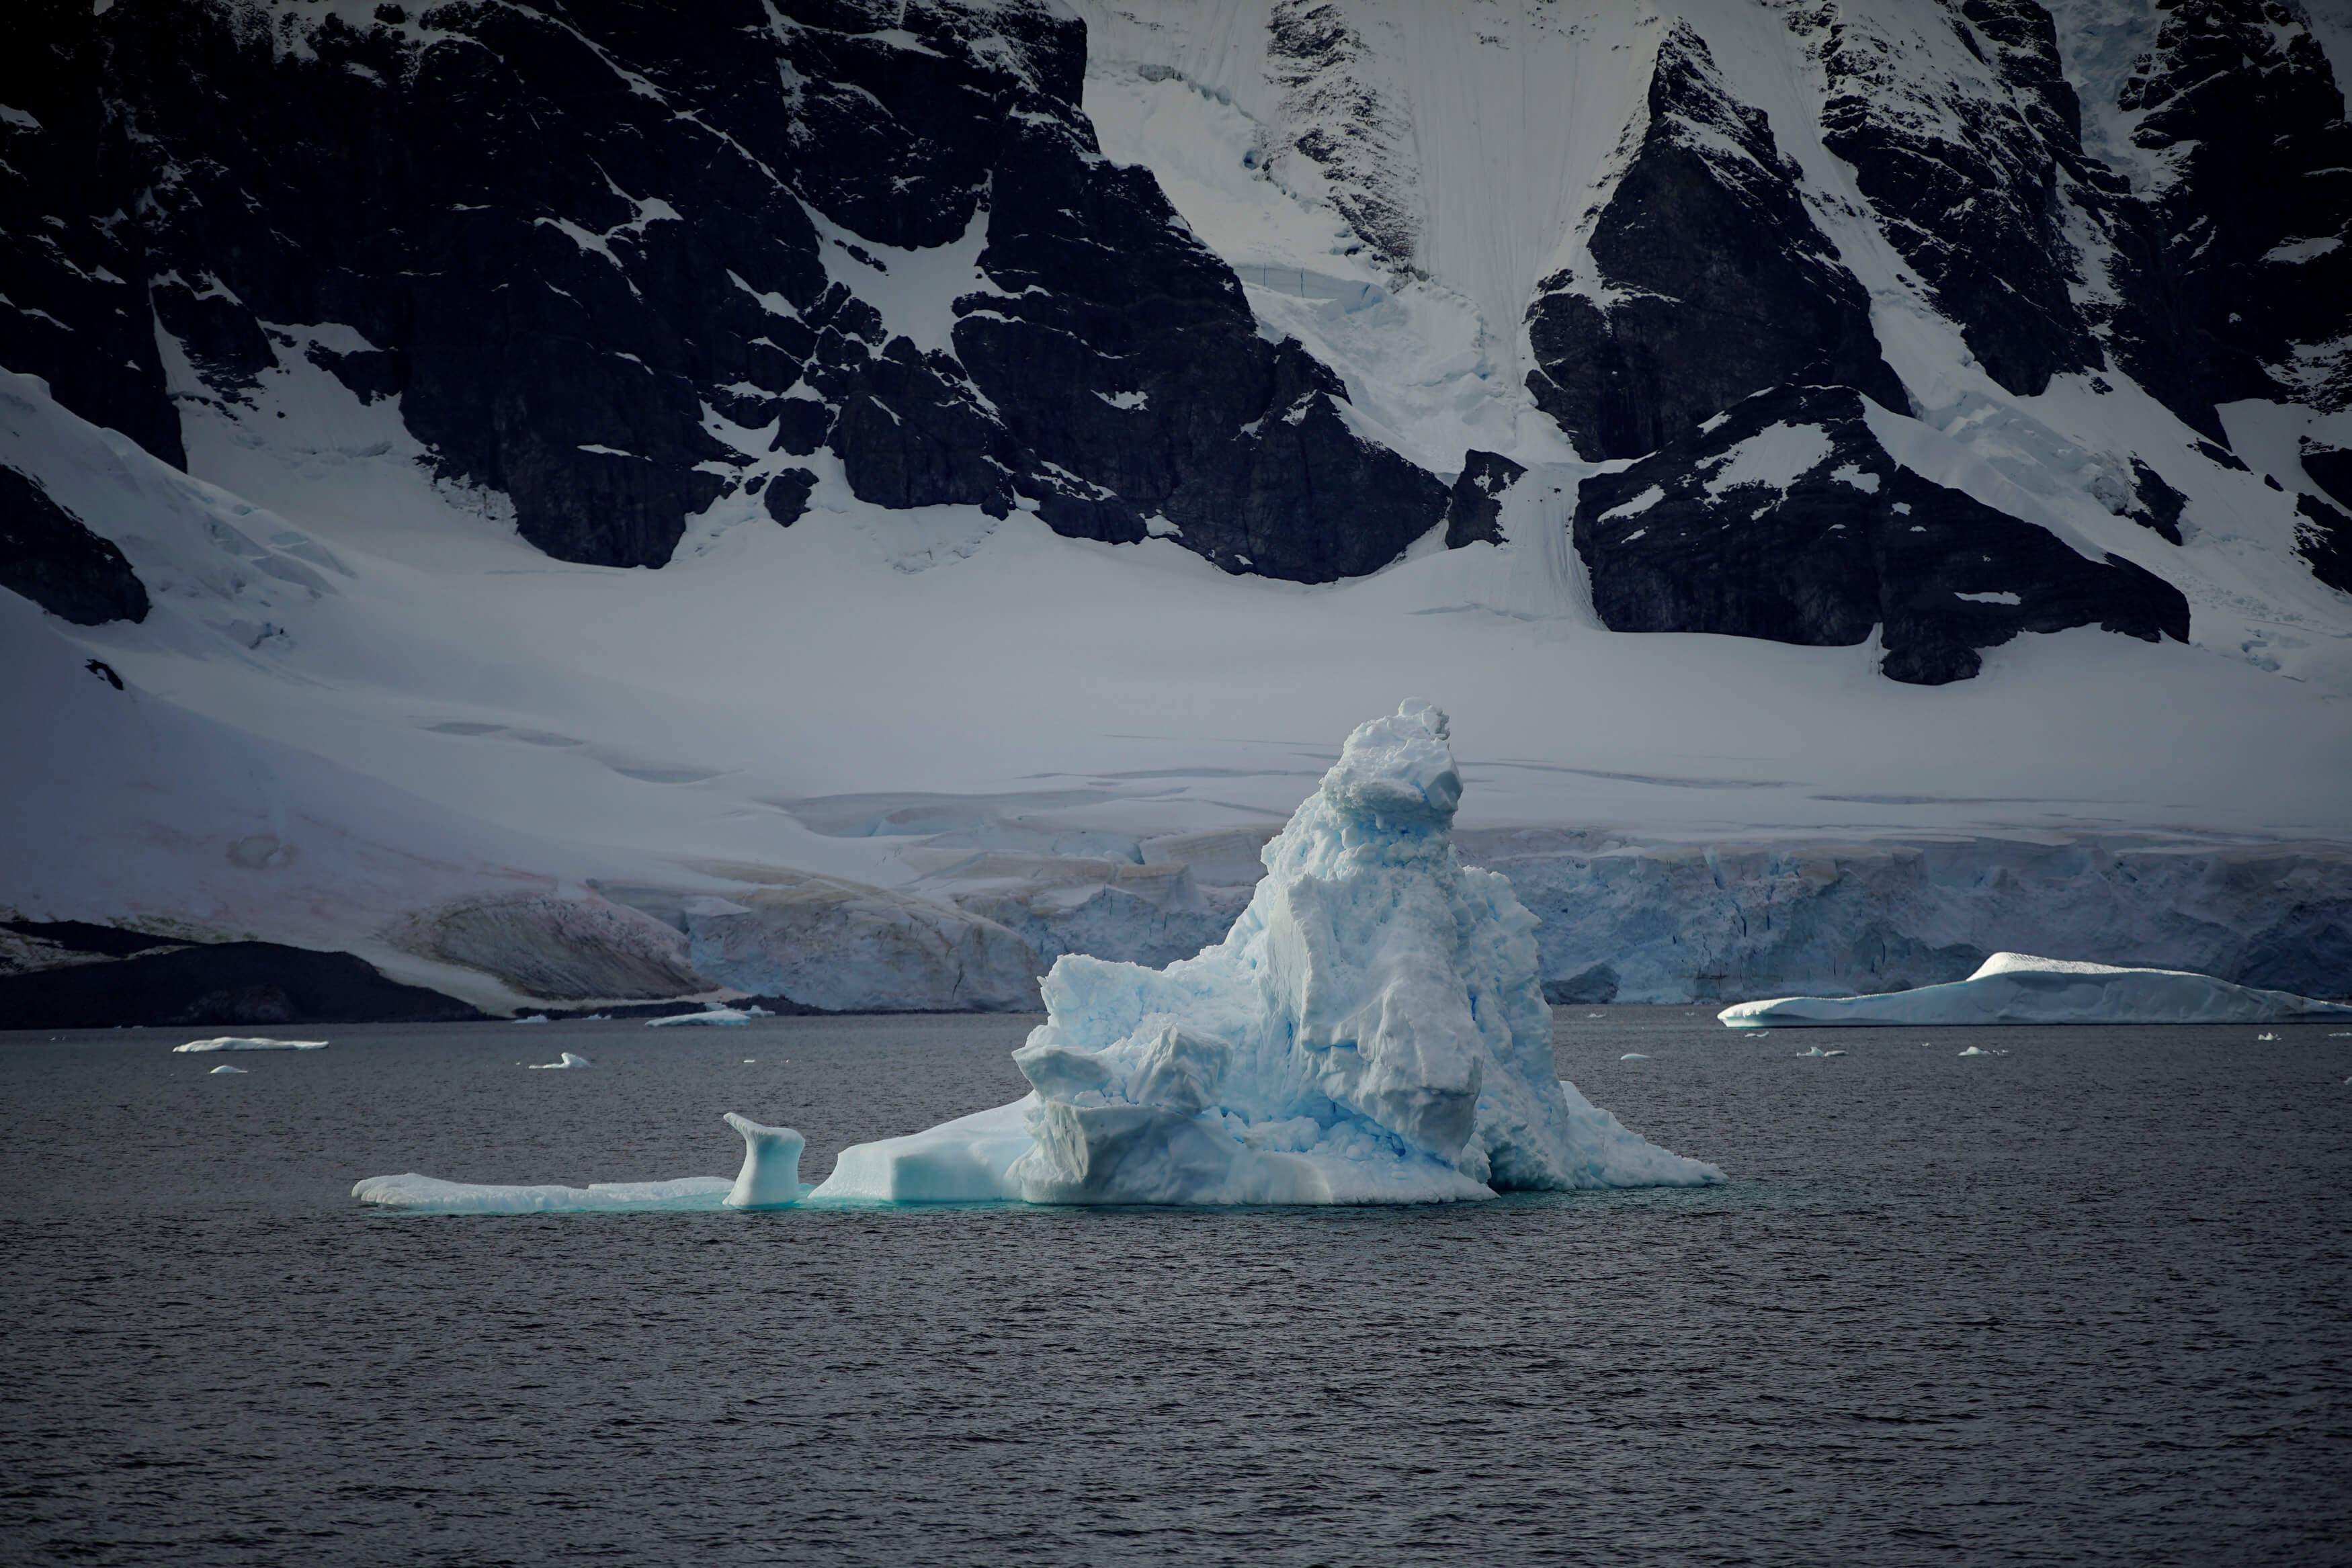 Για “κλιματικό χάος” μιλούν οι επιστήμονες από το λιώσιμο των πάγων